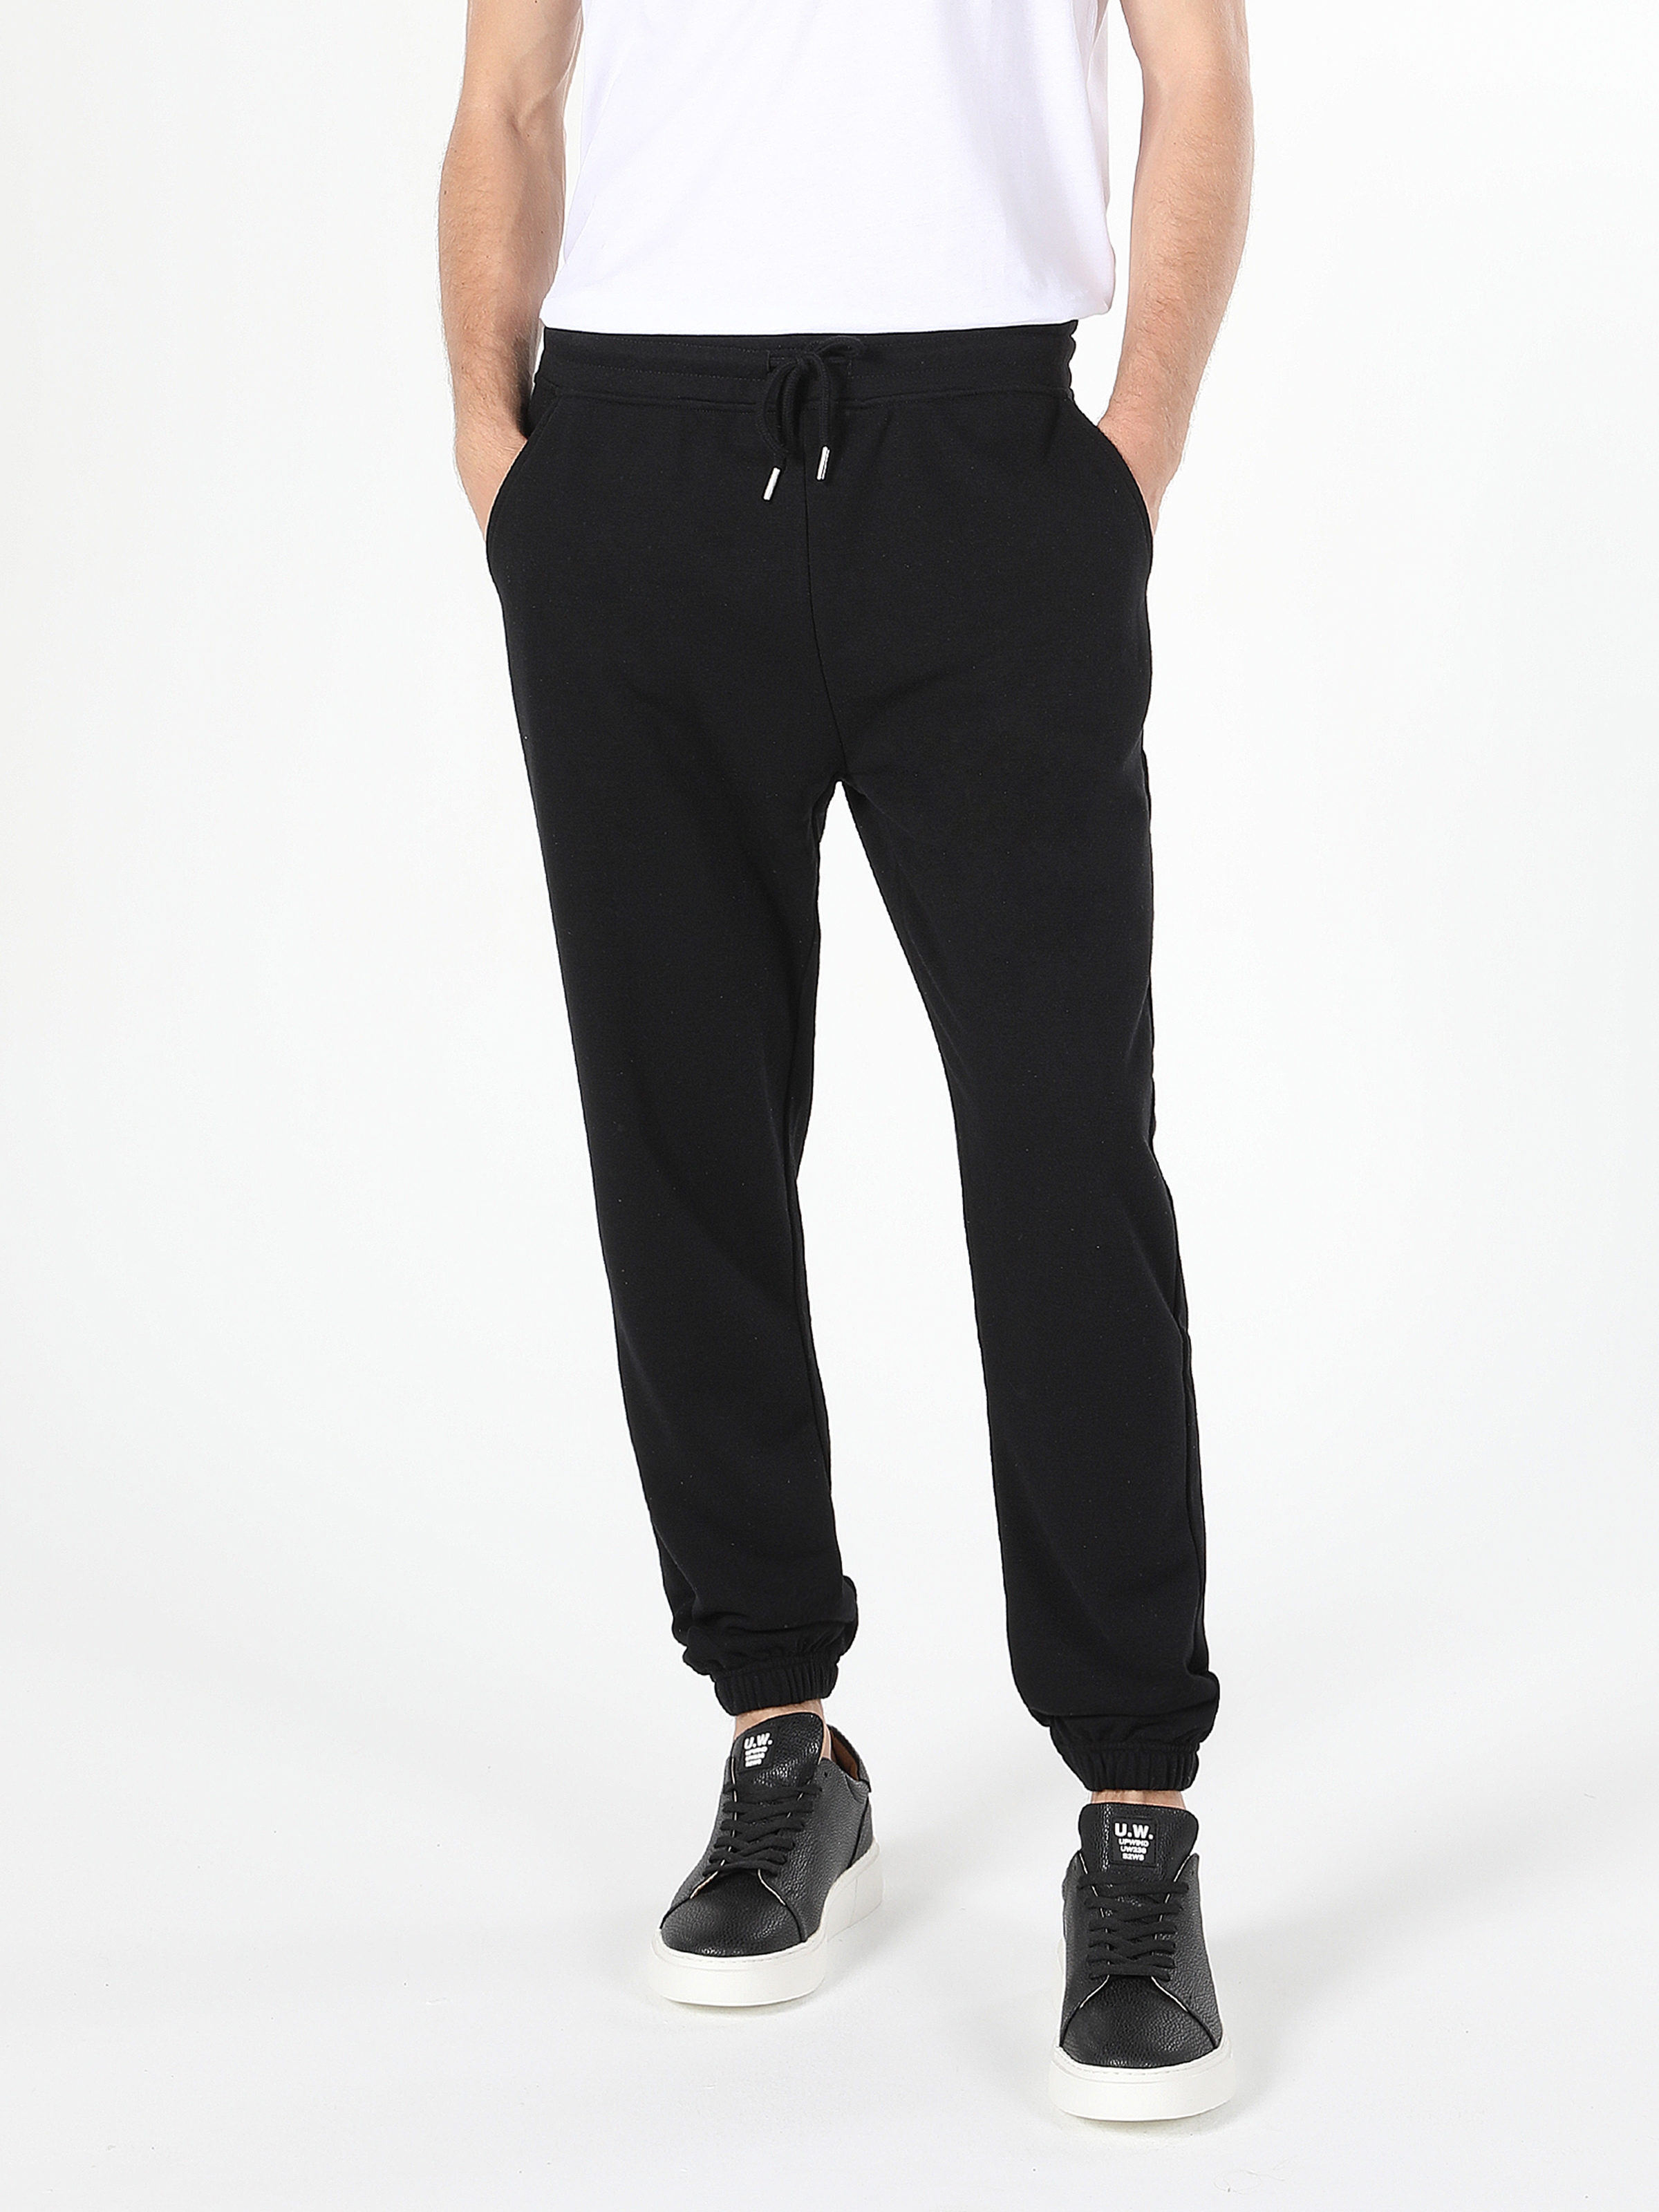 Afficher les détails de Pantalon De Survêtement Noir Multi Poches Coupe Régulière Pour Homme 